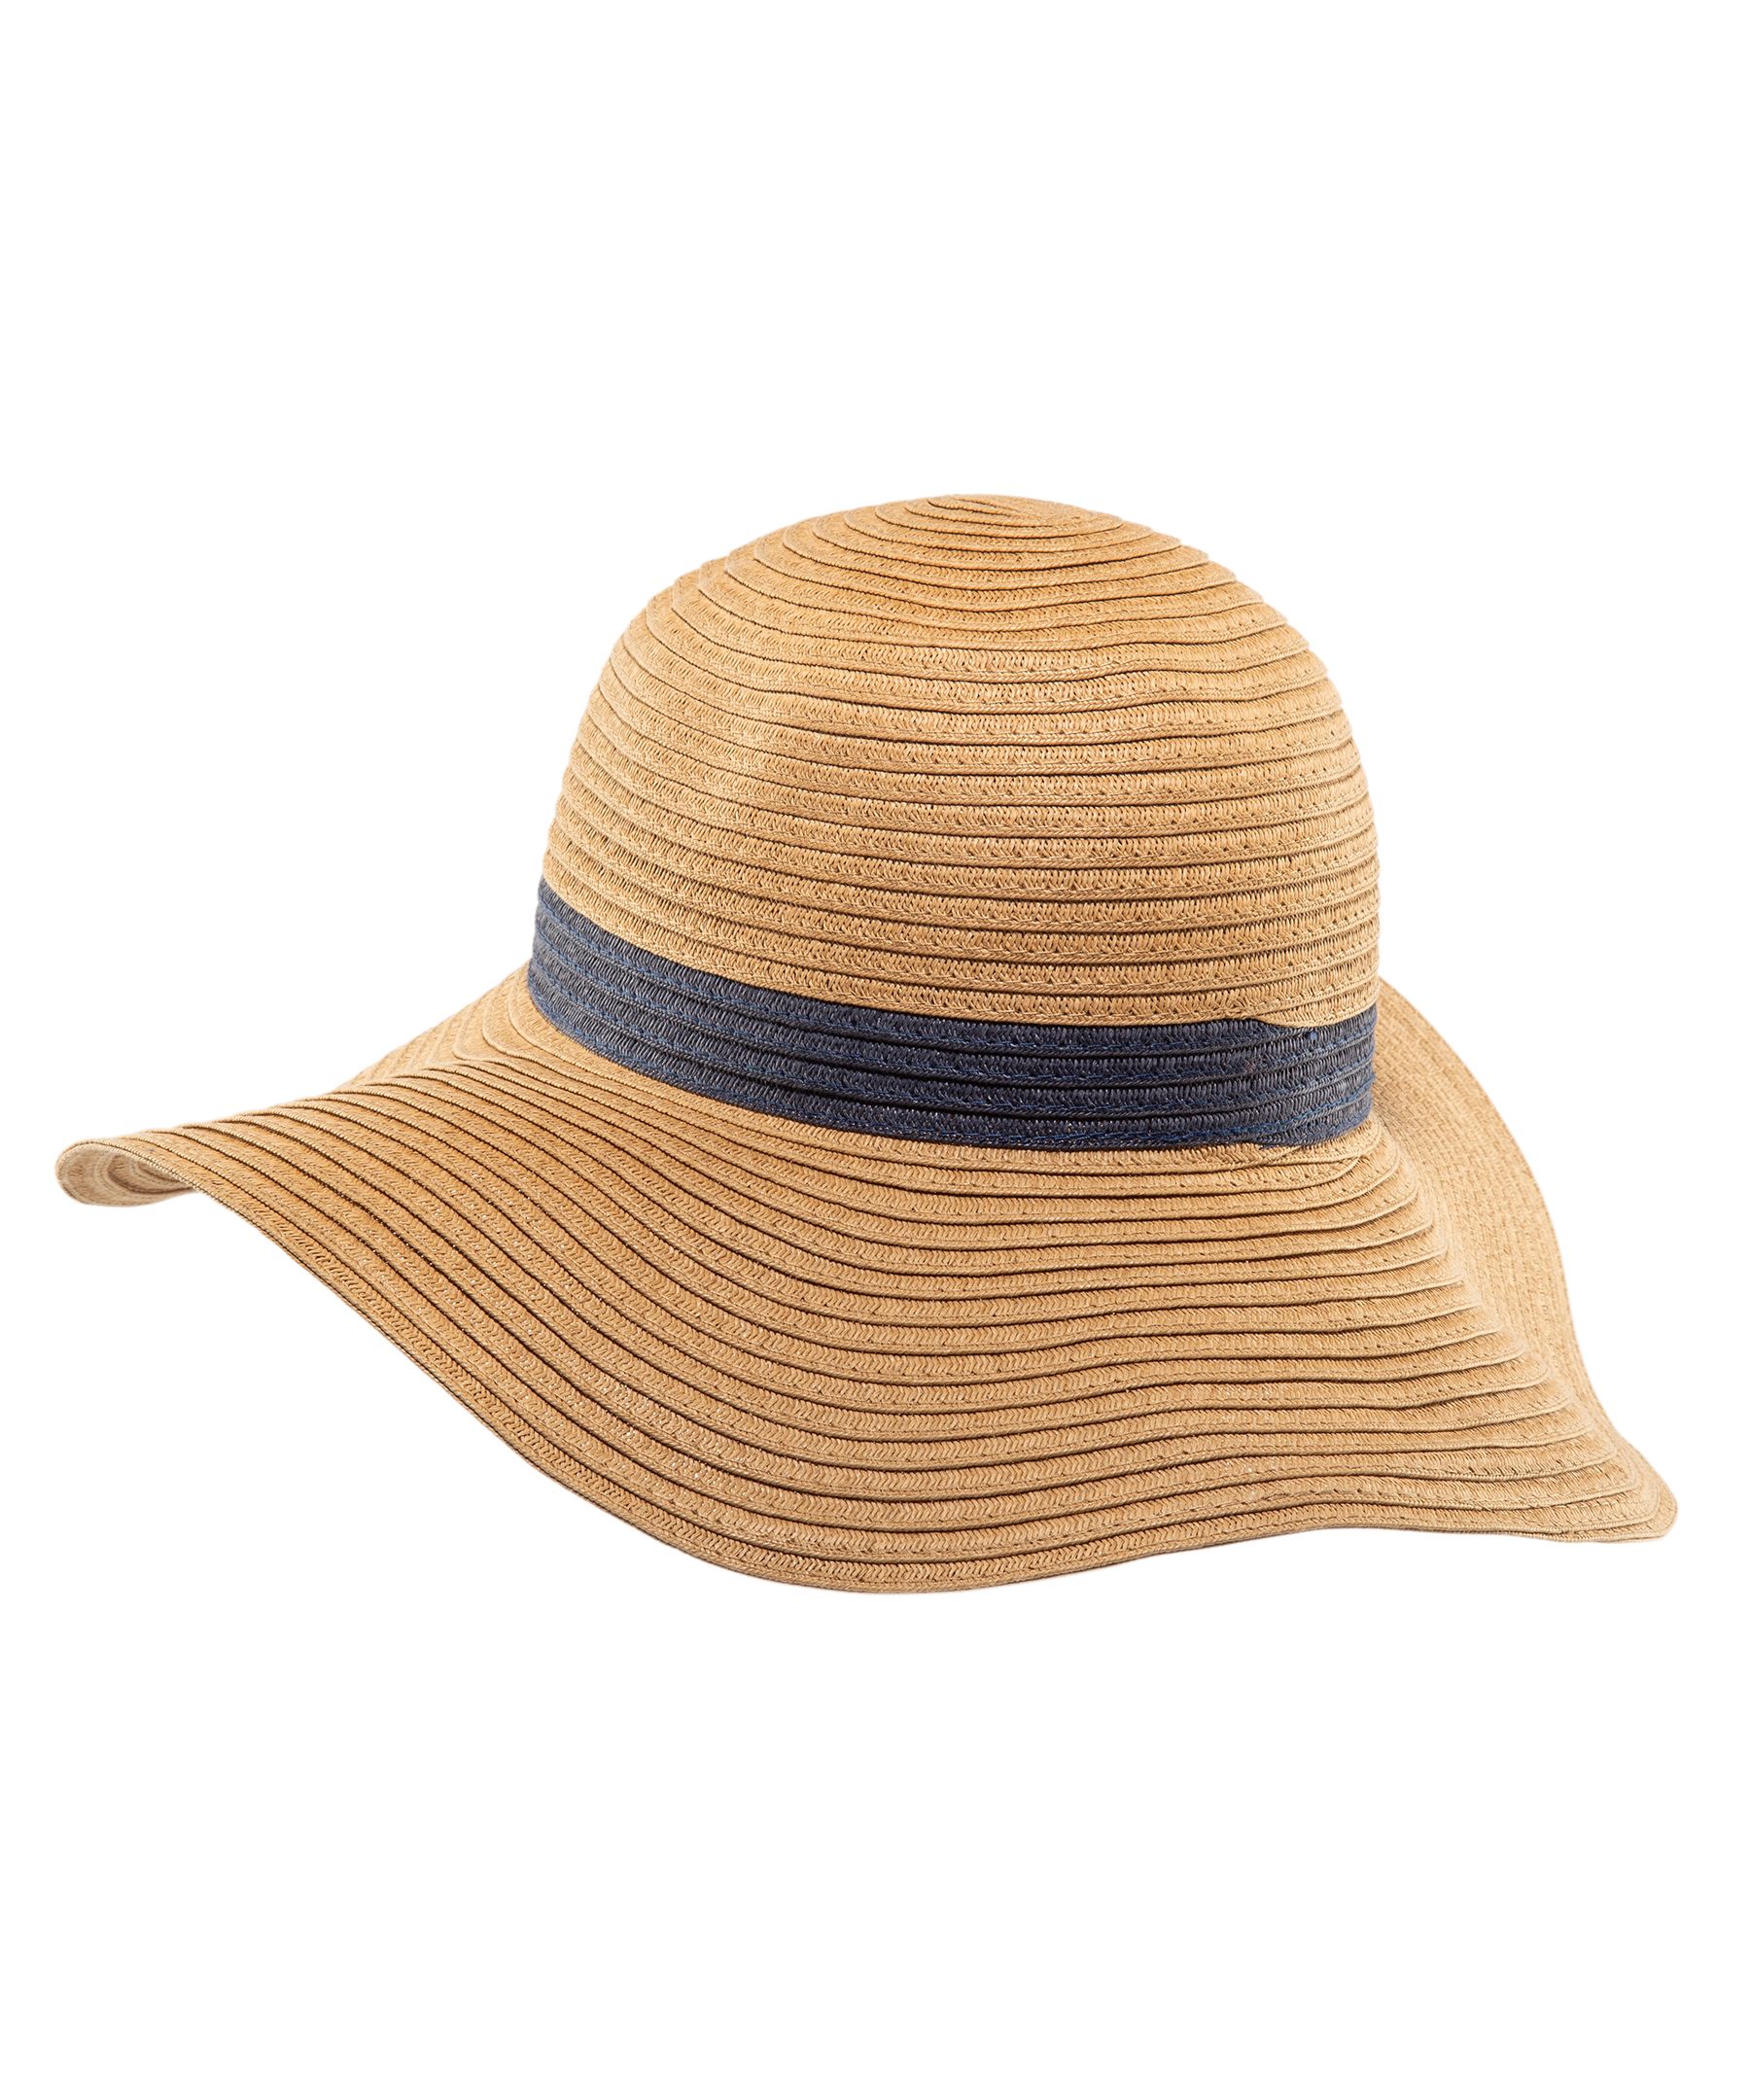 Denver Hayes Women's Floppy Wide Brim Straw Hat